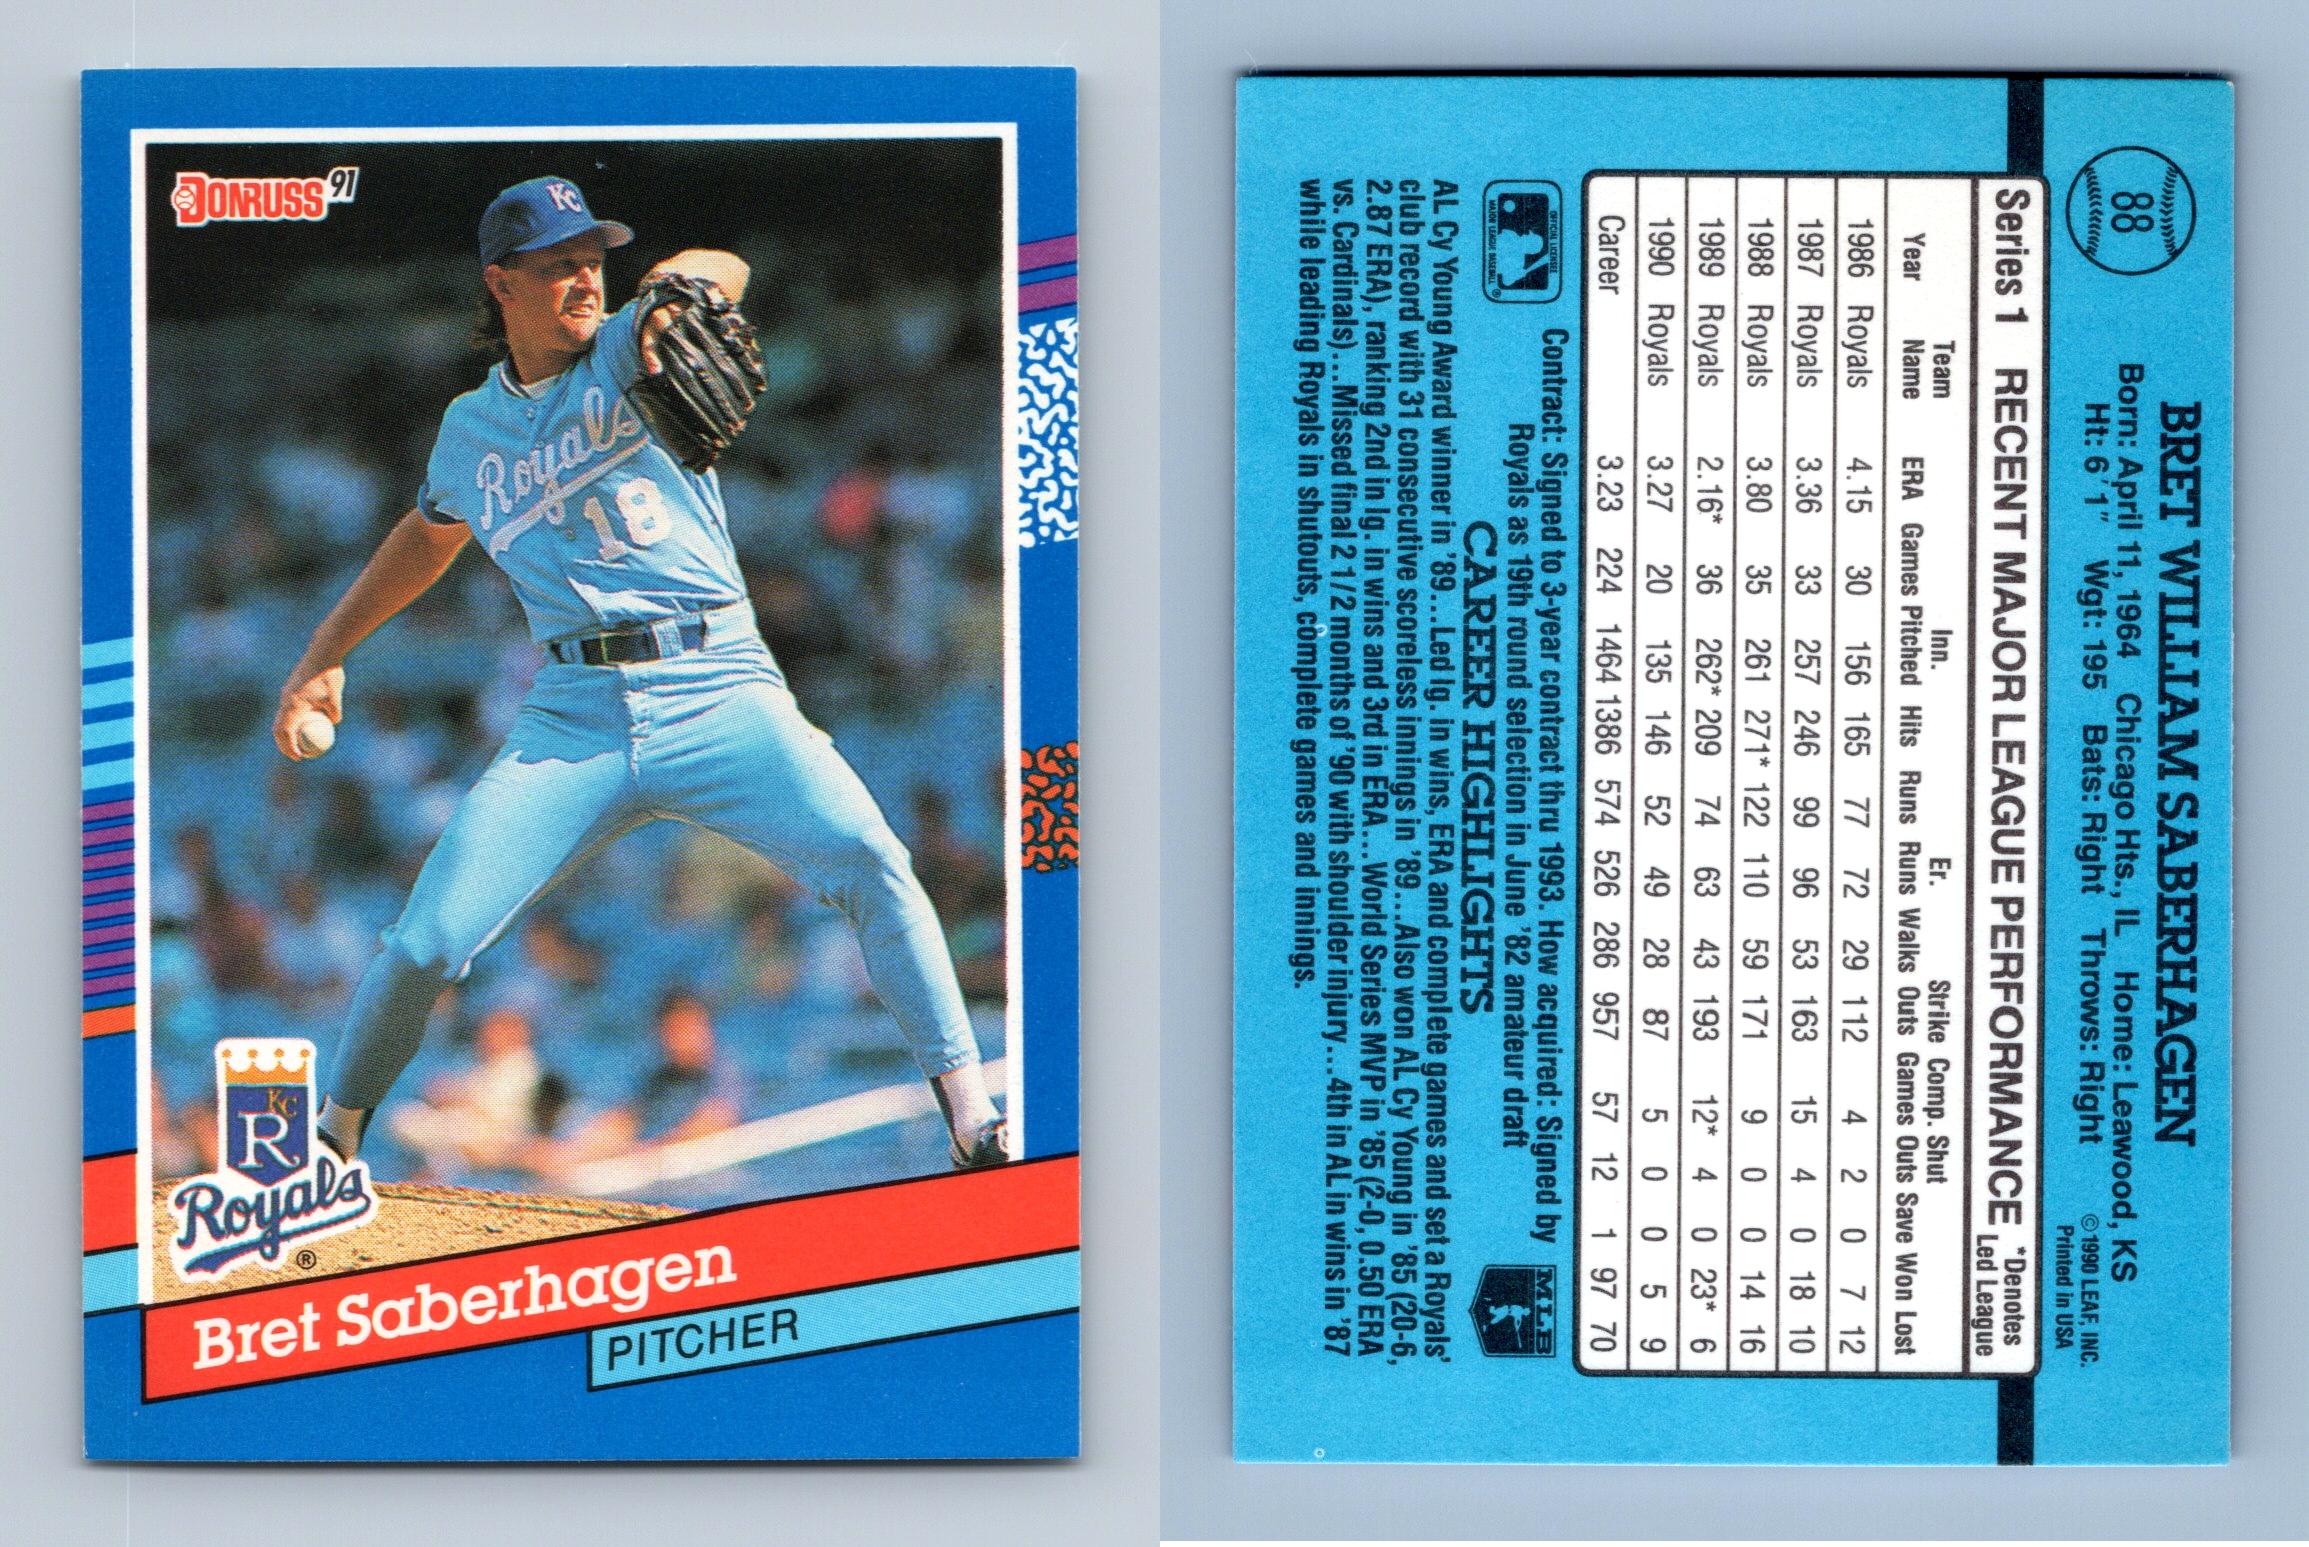 Donruss 91 Chris Sabo 153 Baseball Card - READ DESCRIPTION